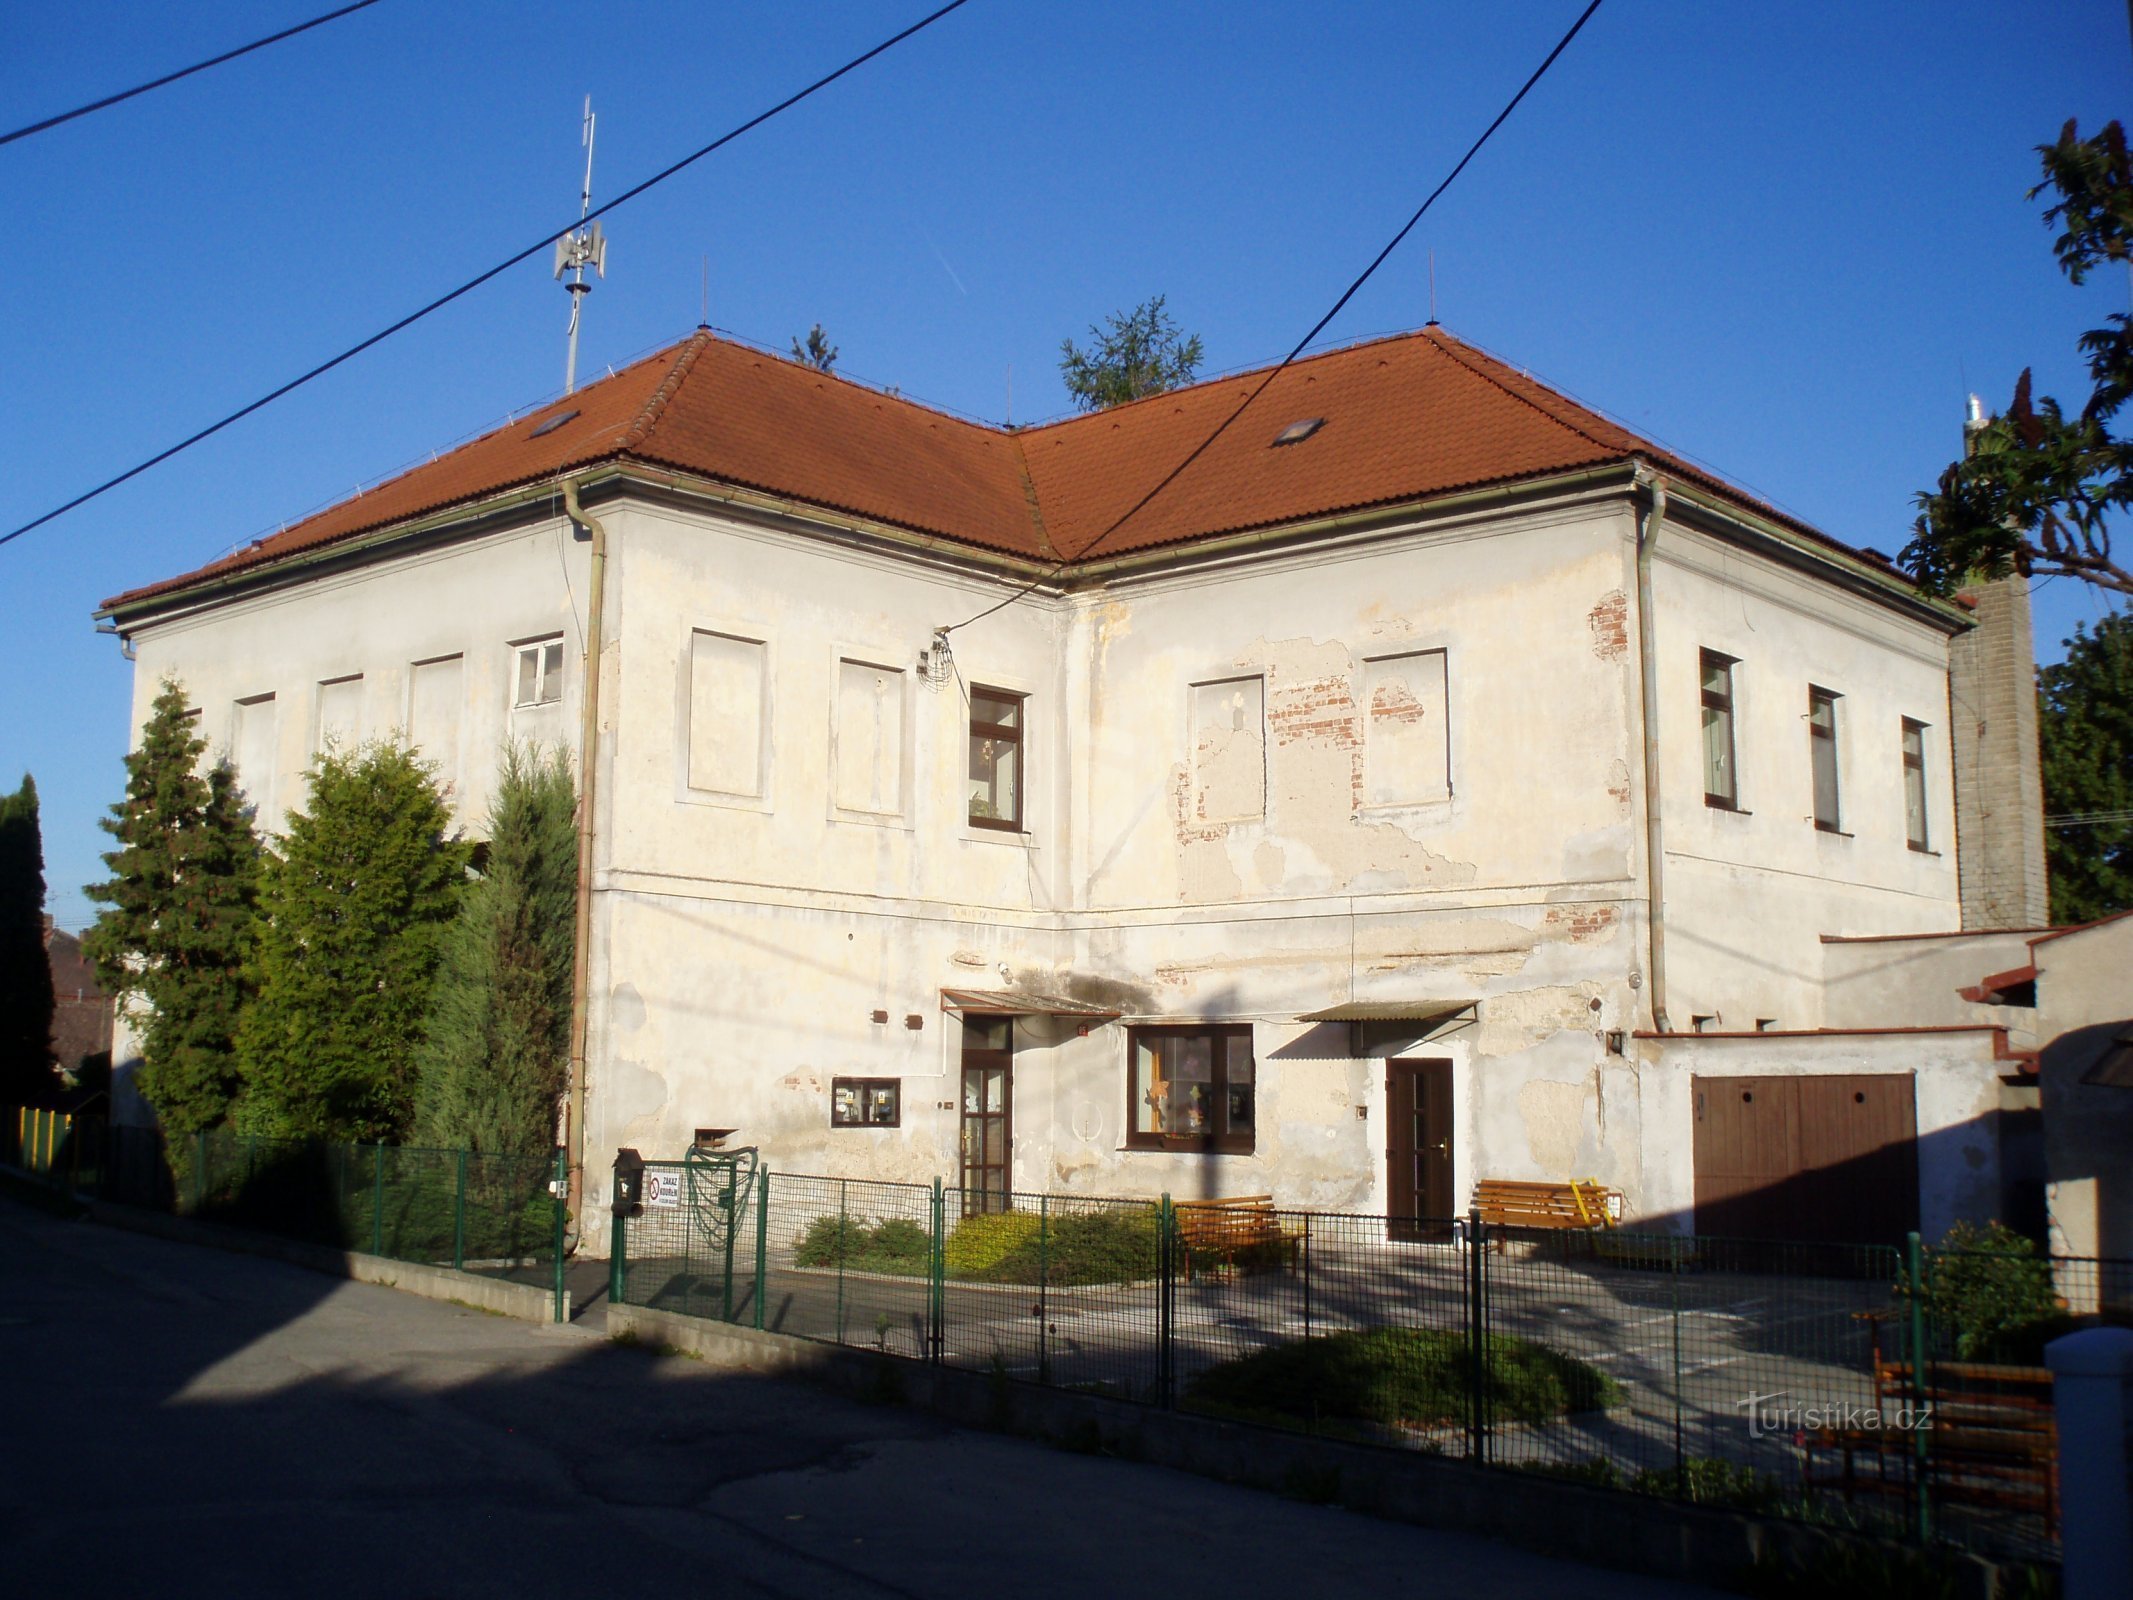 Dagis i Slatina före återuppbyggnad (Hradec Králové)